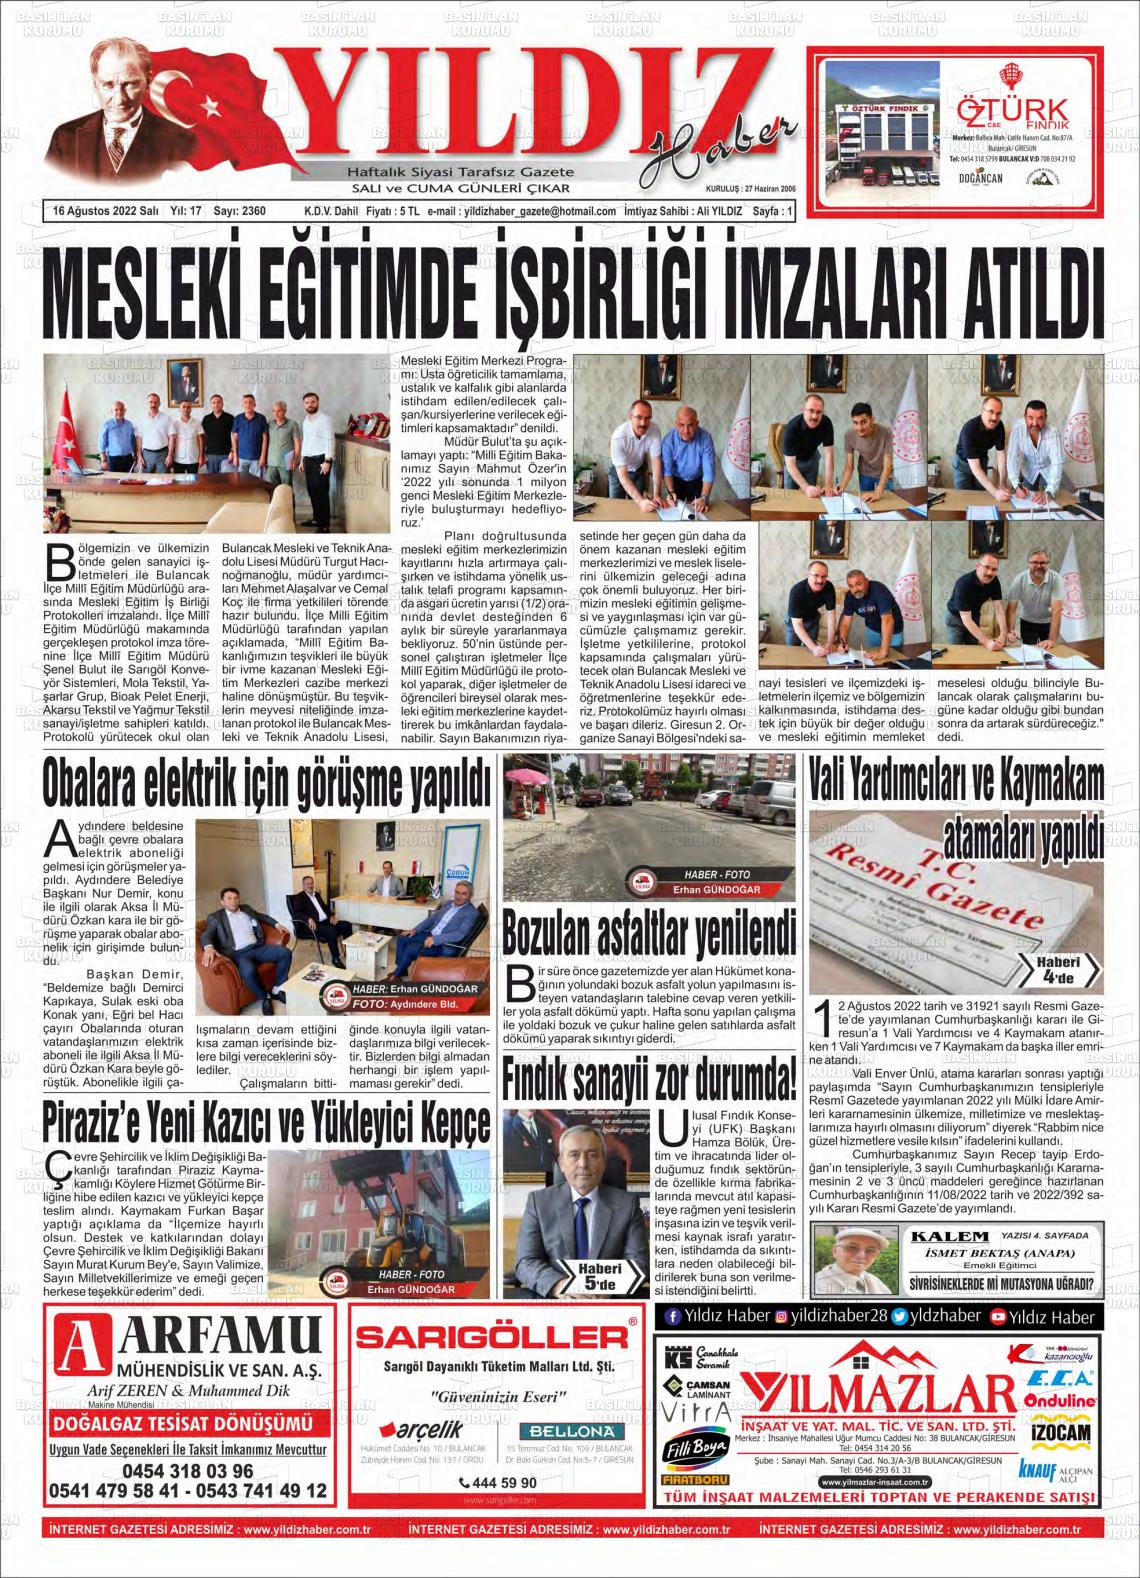 16 Ağustos 2022 Yıldız Haber Gazete Manşeti